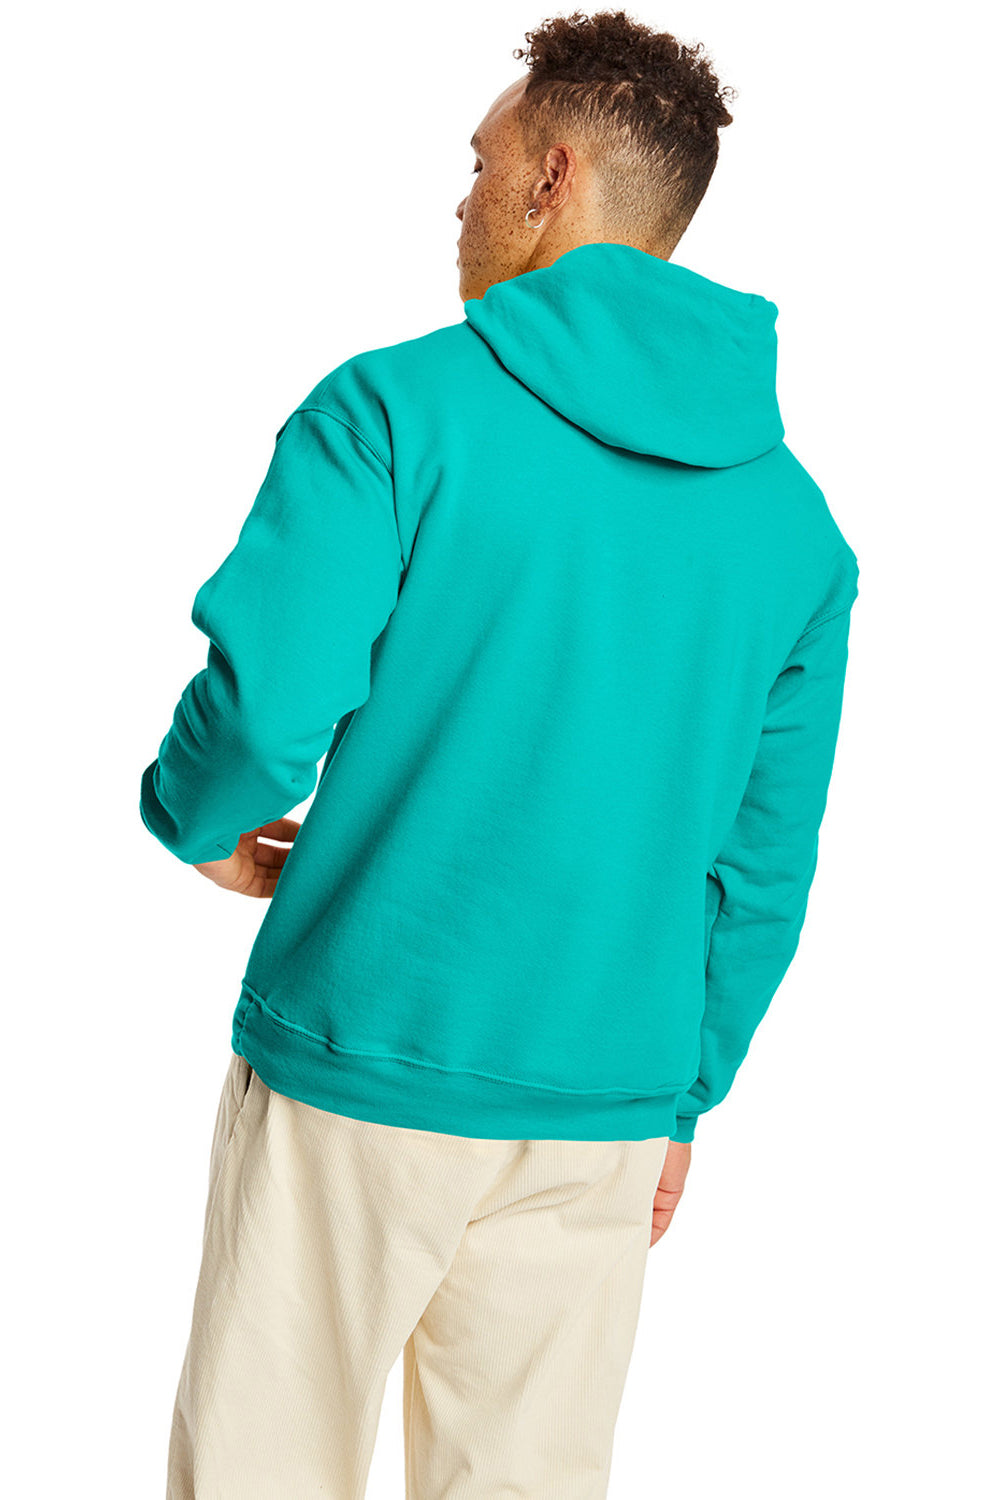 Hanes P170 Mens EcoSmart Print Pro XP Hooded Sweatshirt Hoodie Athletic Teal Green Back